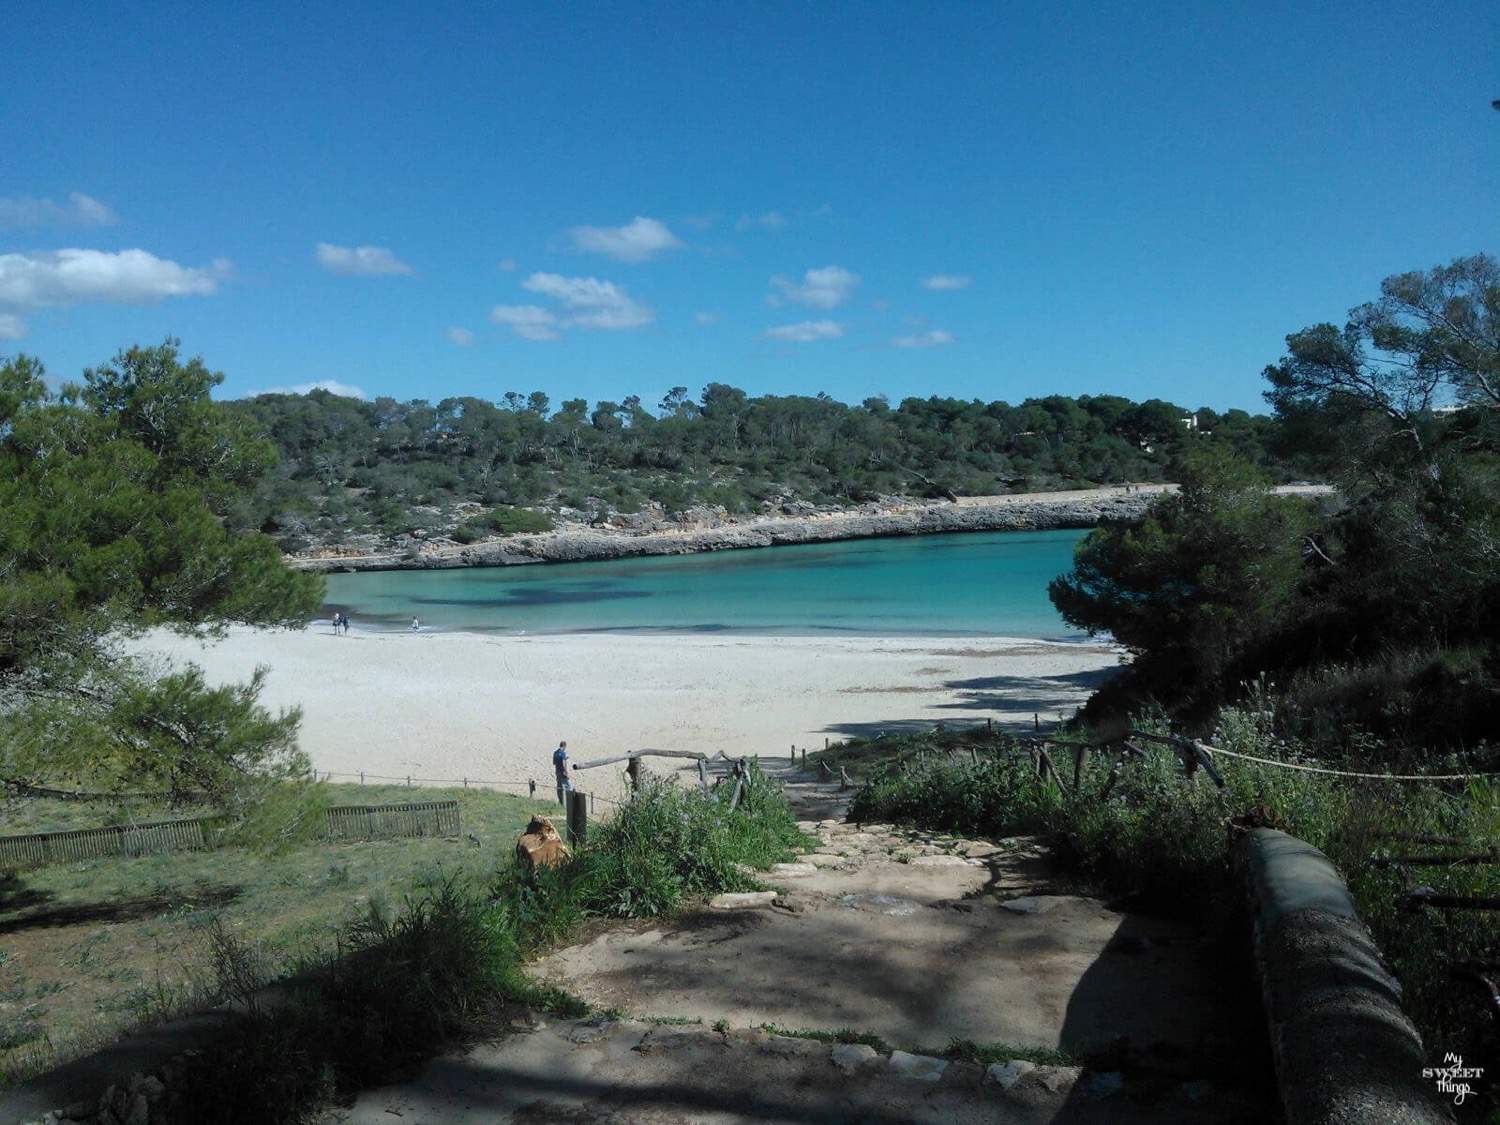 Que hacer en verano en Mallorca  -  Actividades de verano para toda la familia en Mallorca - Cala Mondrago